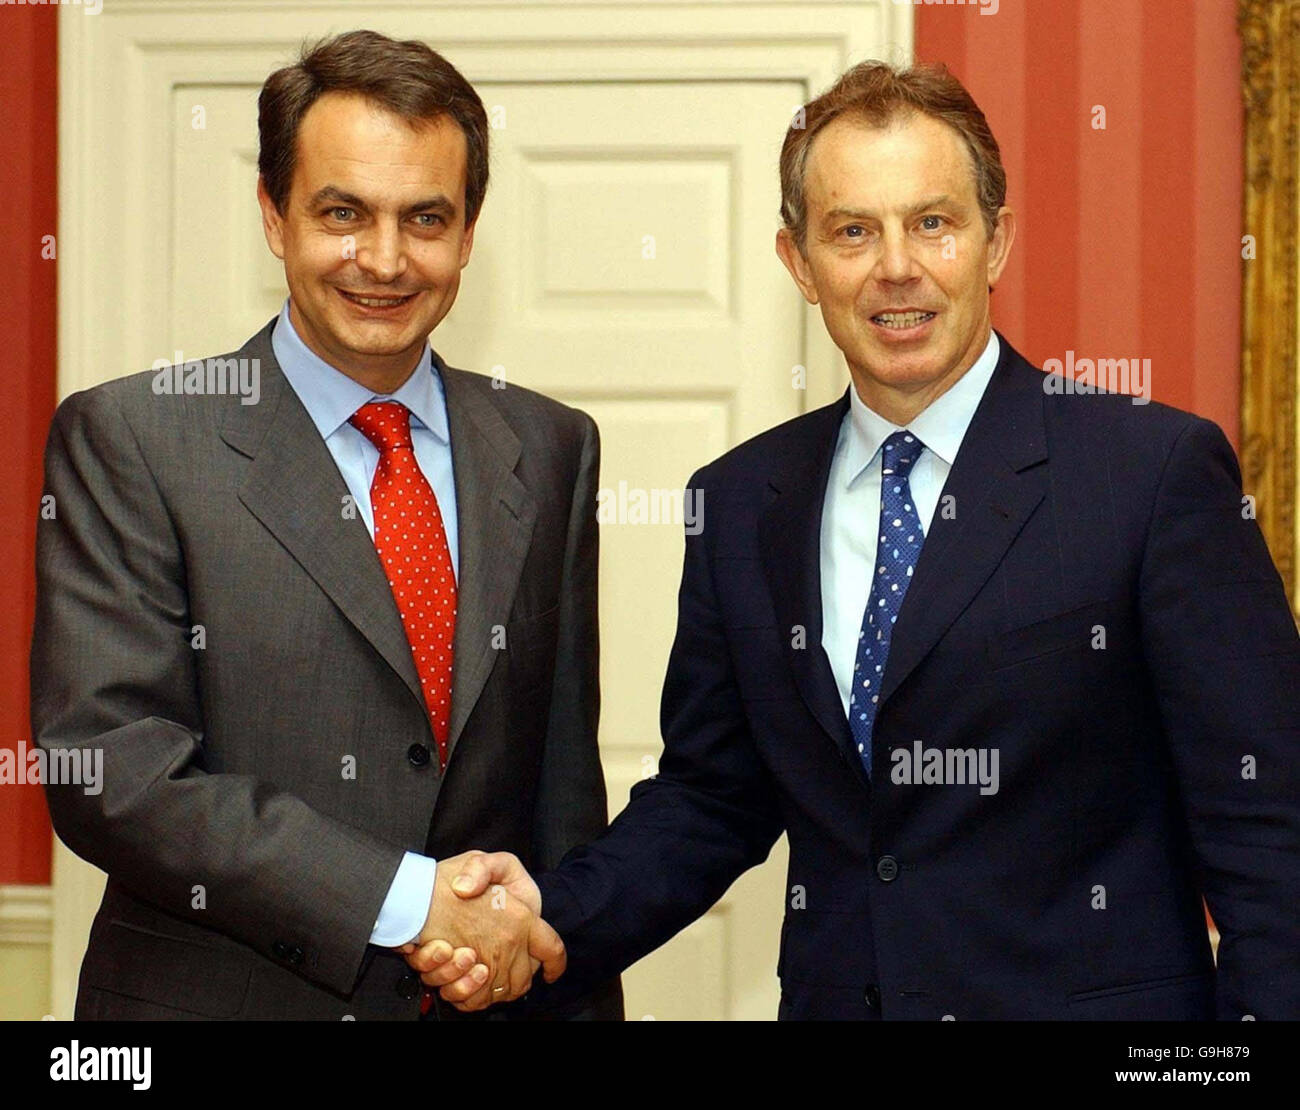 Bibliotheksfiler vom 03/06/2004 des britischen Premierministers Tony Blair mit dem spanischen Premierminister Jose Luis Rodriguez Zapatero (rechts) in der Downing Street. Stockfoto